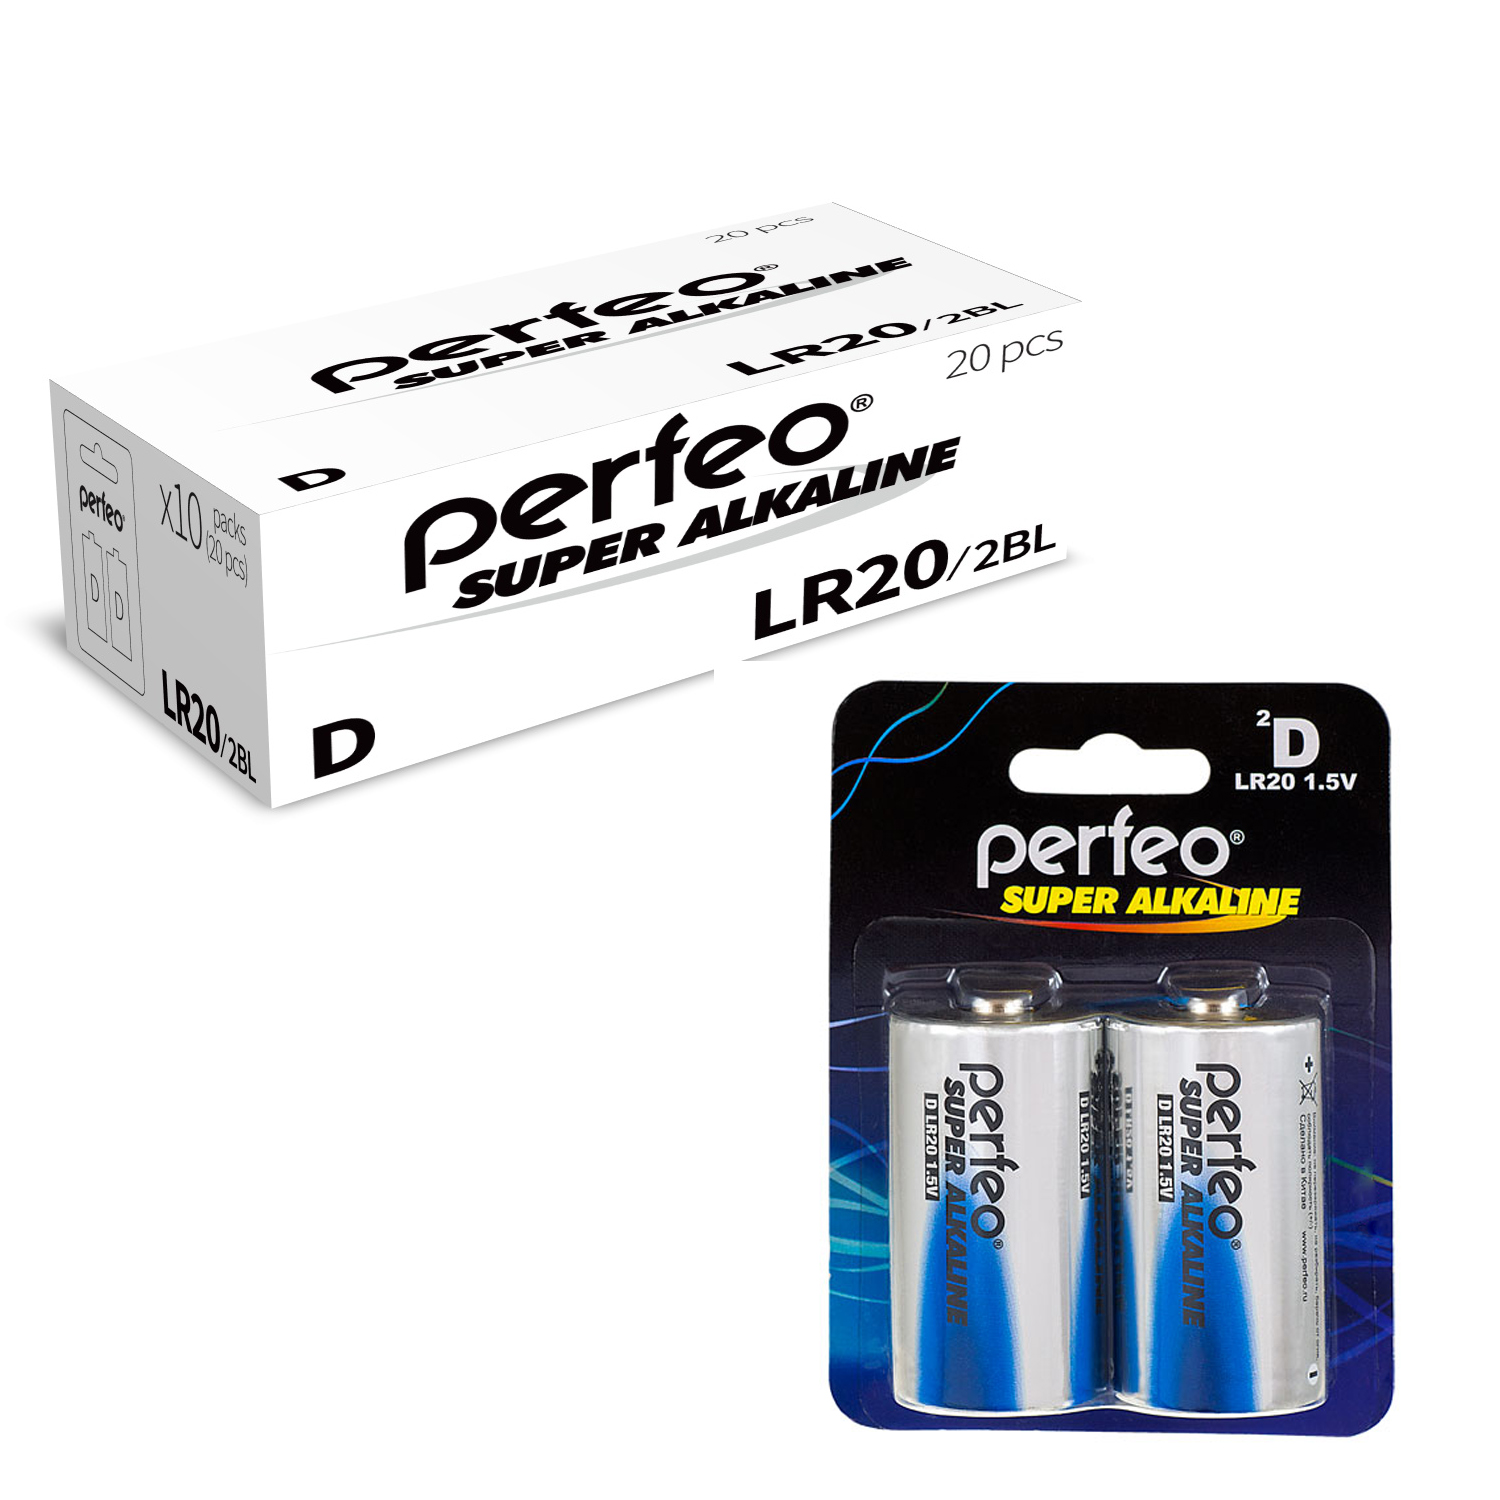 Батарейка Perfeo LR20/2BL Super Alkaline 20 шт батарейки perfeo super alkaline ааа lr03 отрывные 10 шт